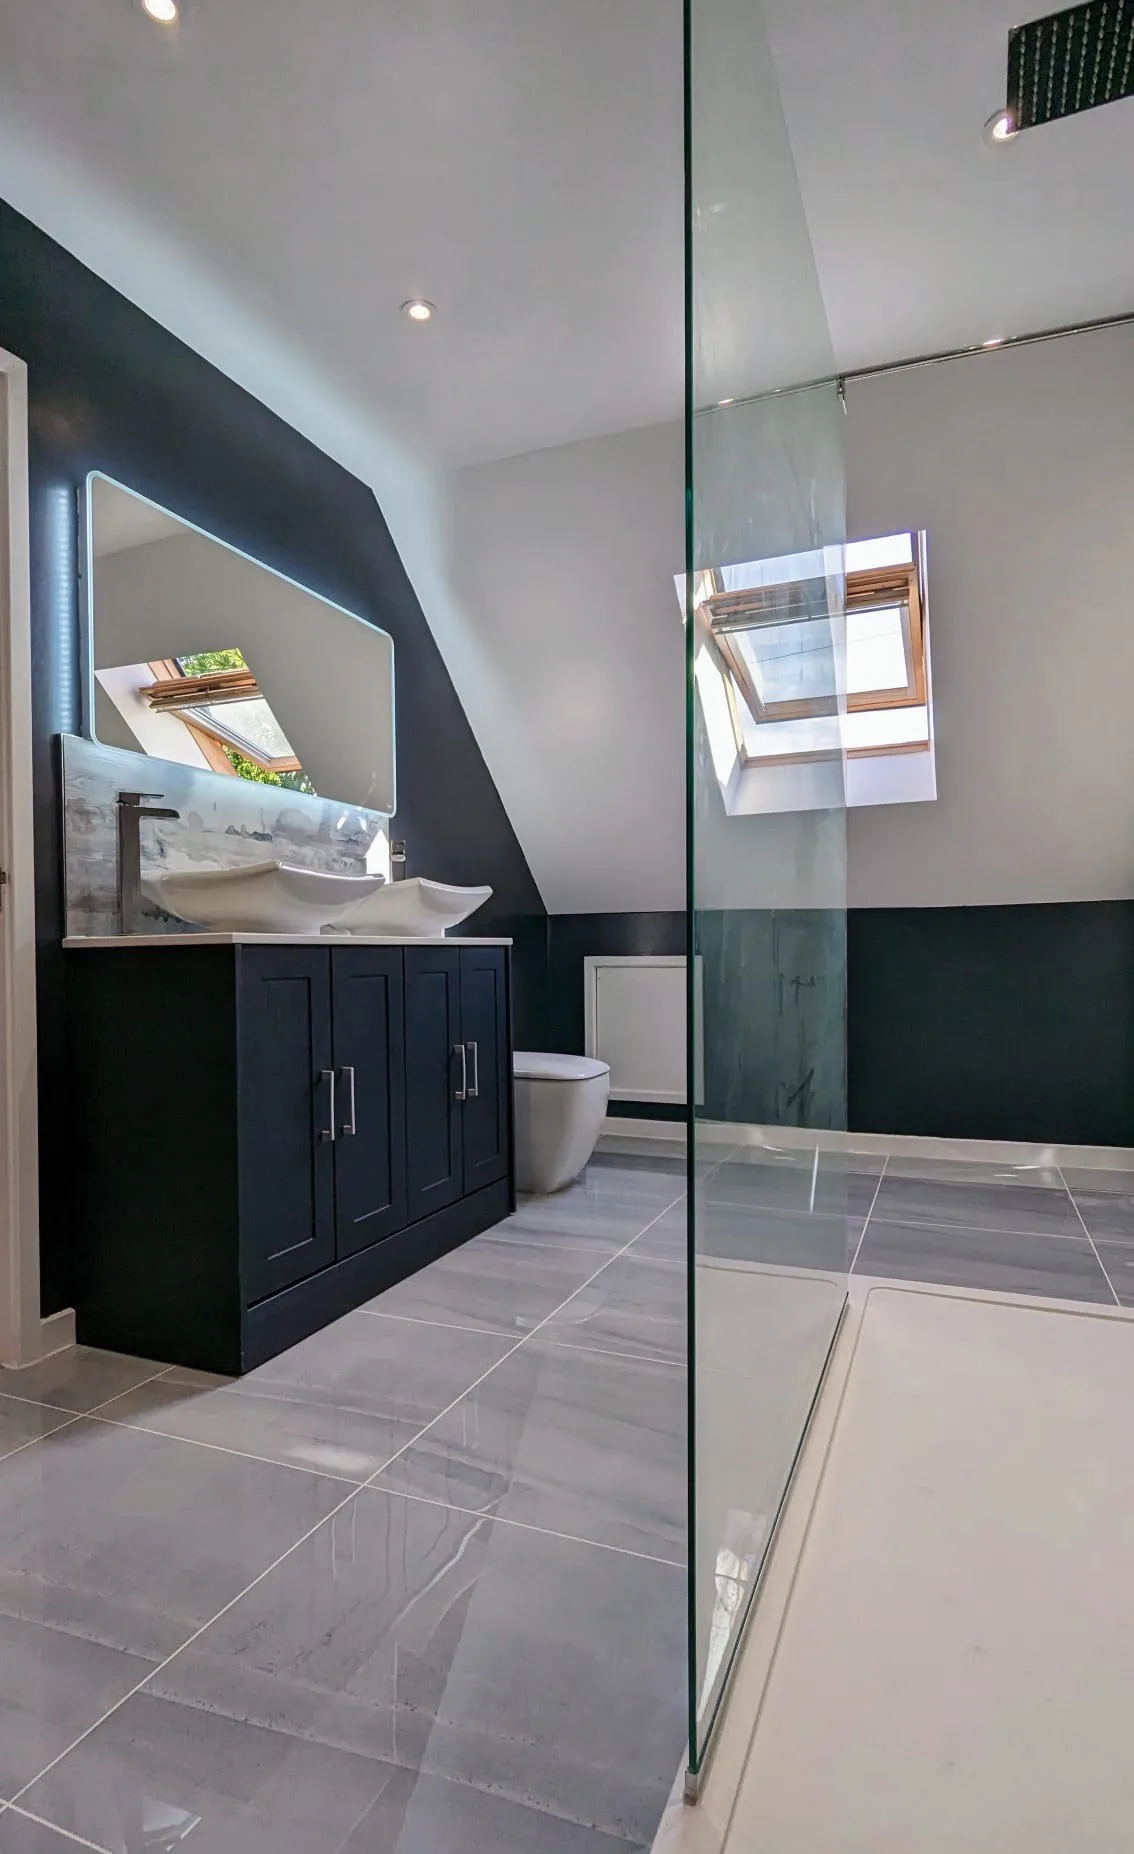 Attic Bathroom Design with Walk-In Shower & Double Vanity Set